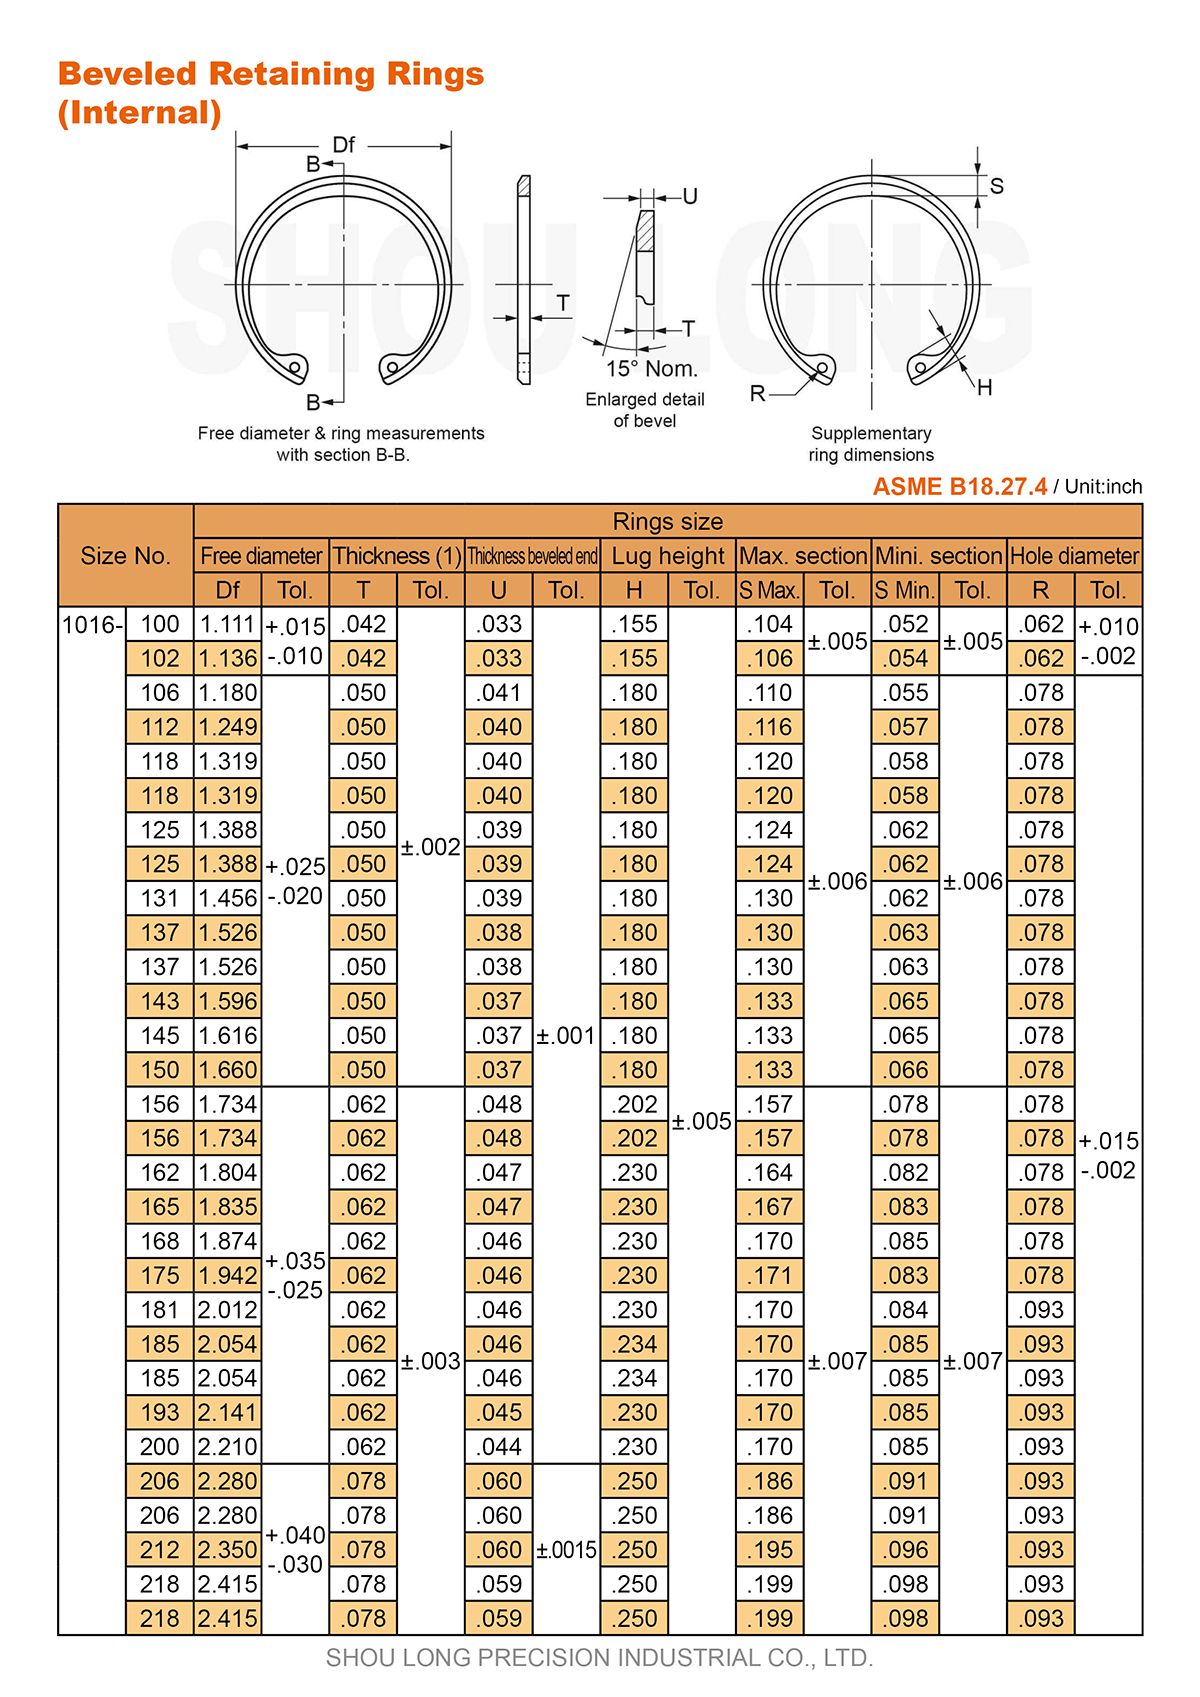 مواصفات حلقات الاحتفاظ المائلة بالمقاس الإنش للثقوب وفقًا للمعيار ASME/ANSI B18.27.4-1